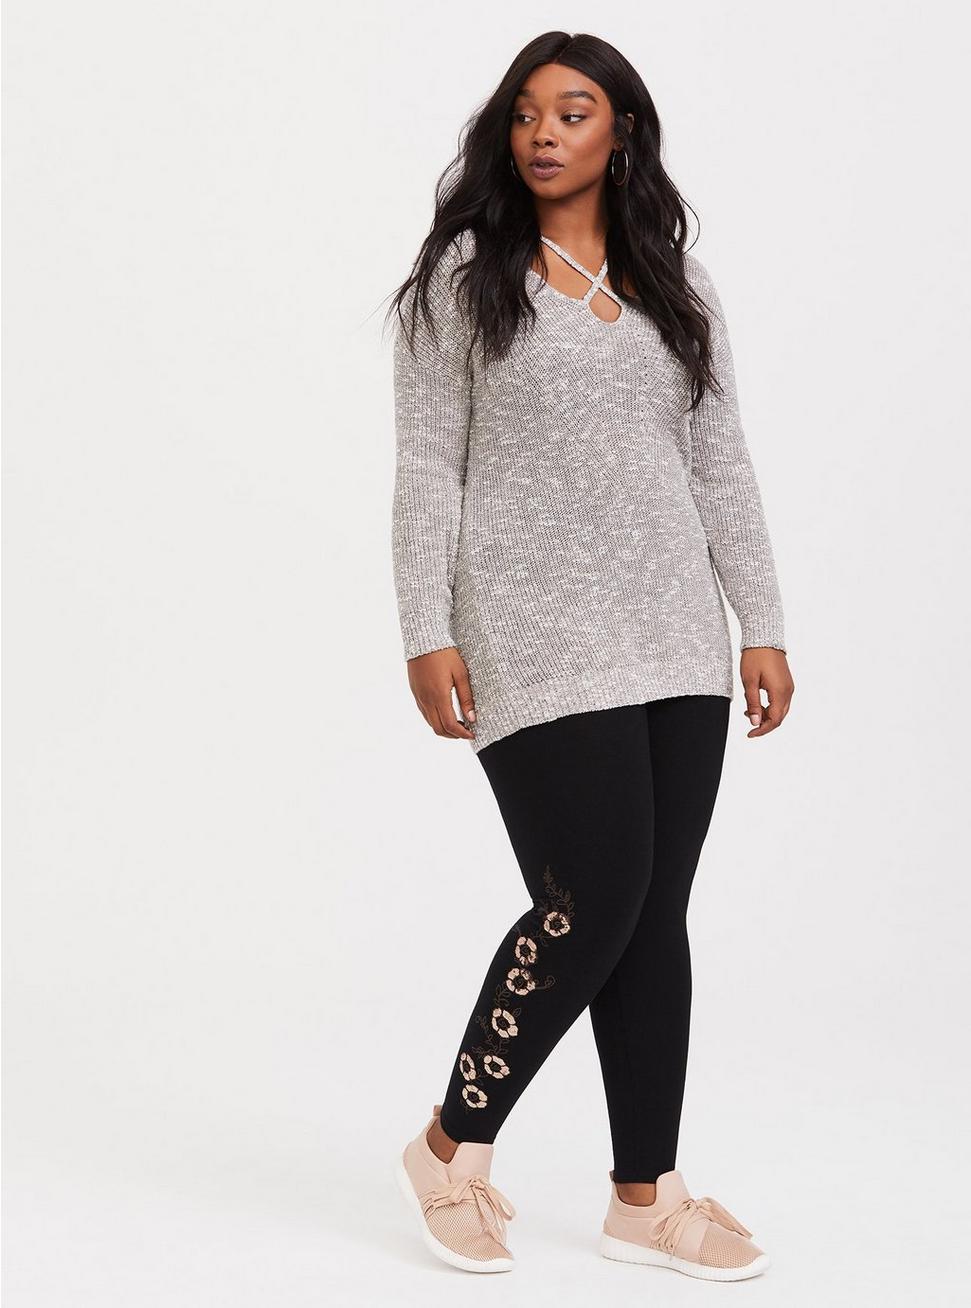 Plus Size - Black Sequin Embroidered Legging - Torrid